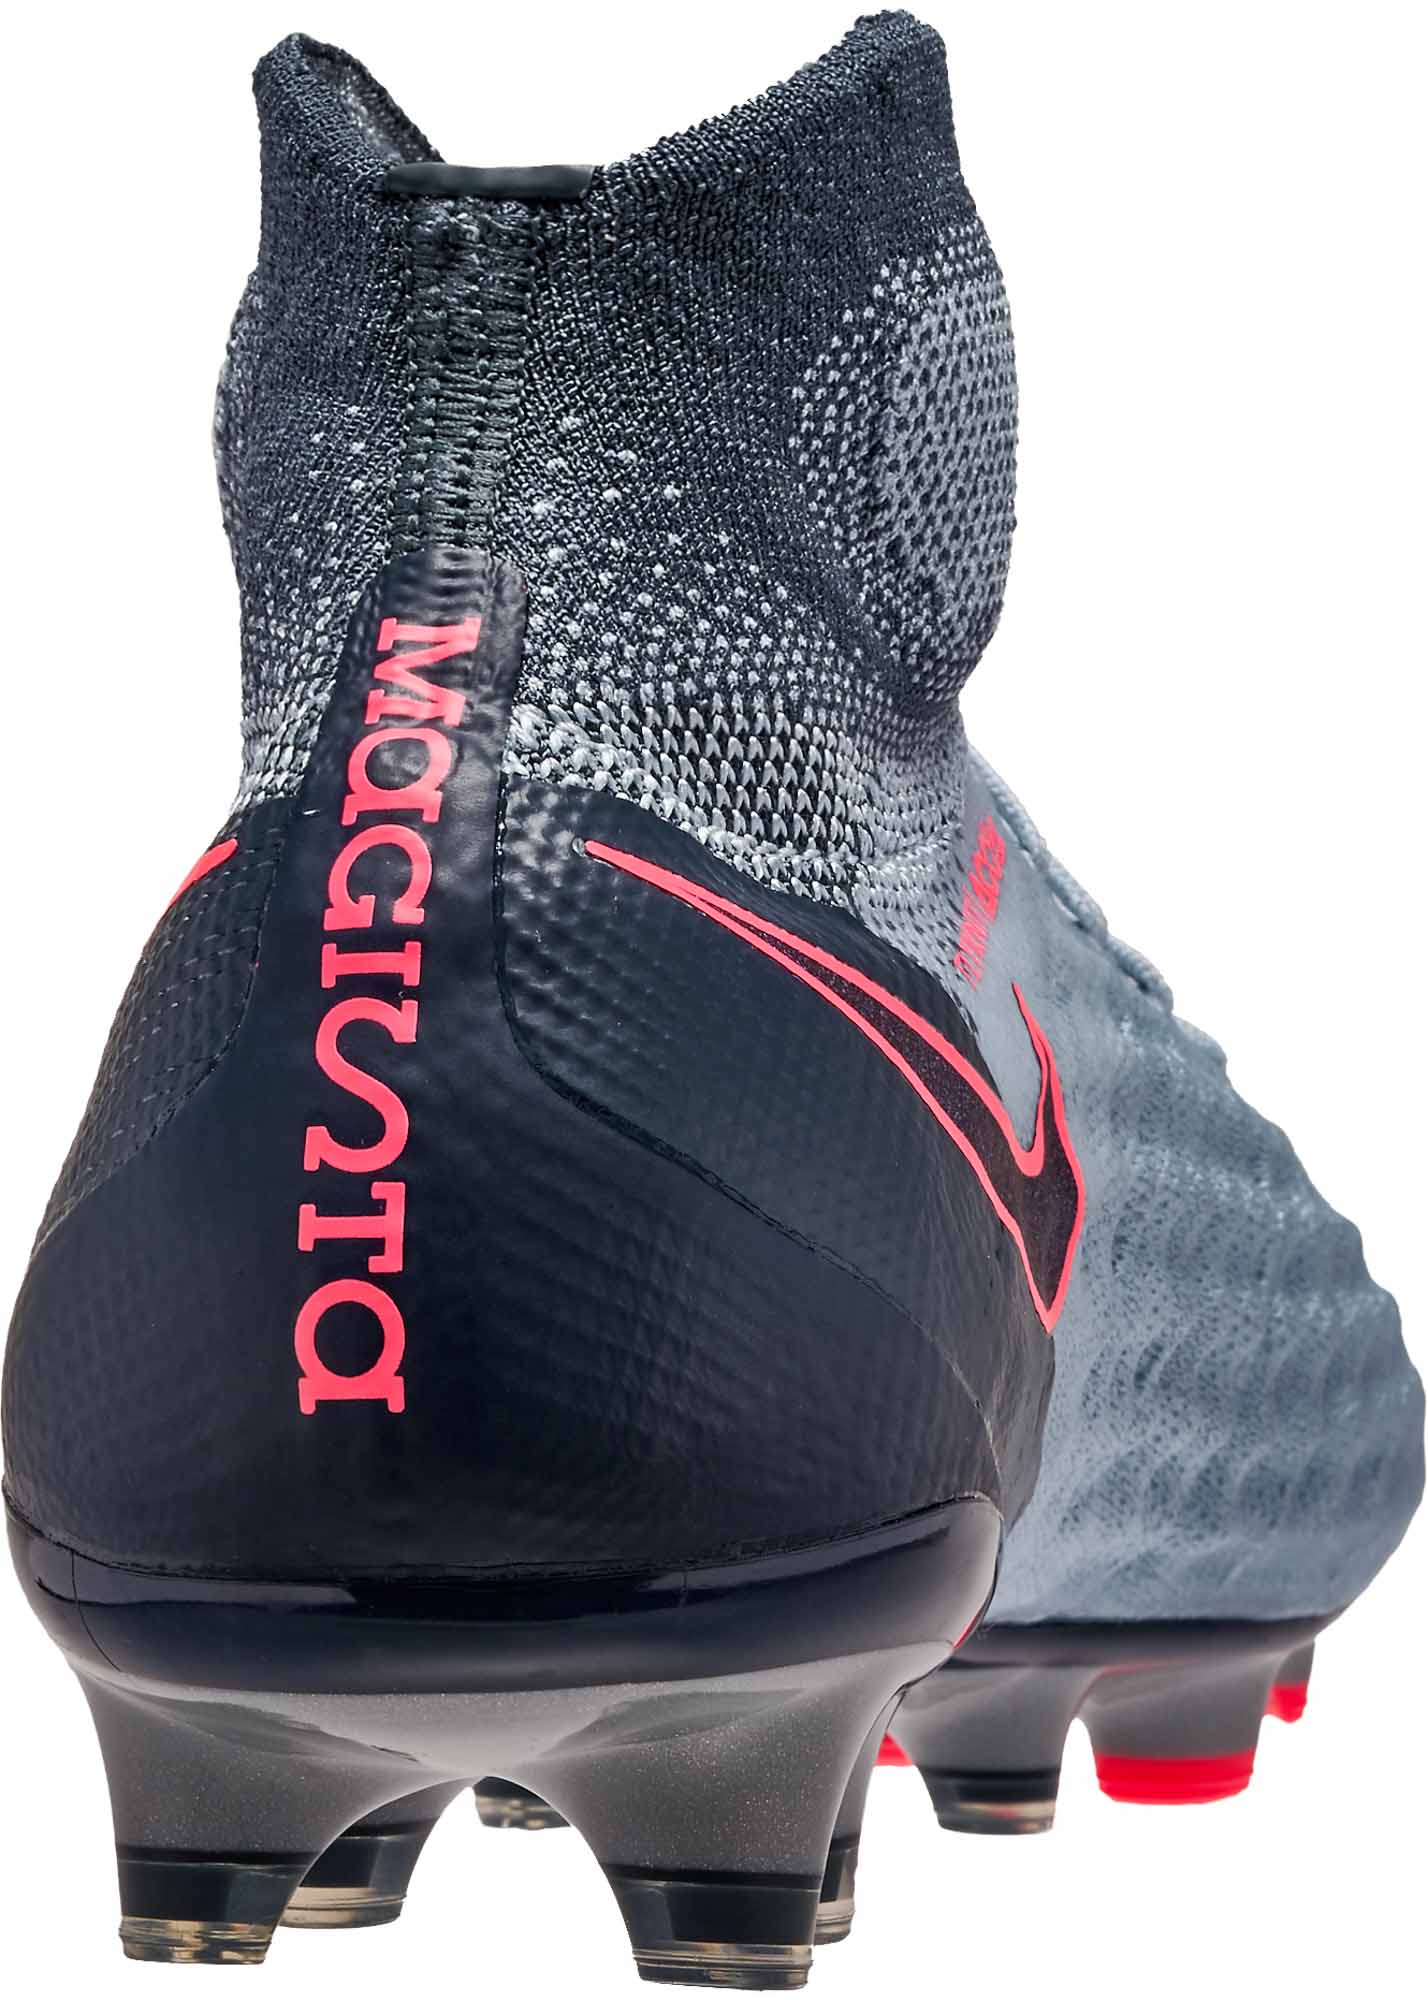 Chaussure de Foot Nike Magista Obra II Tech Craft 2.0 FG Noir